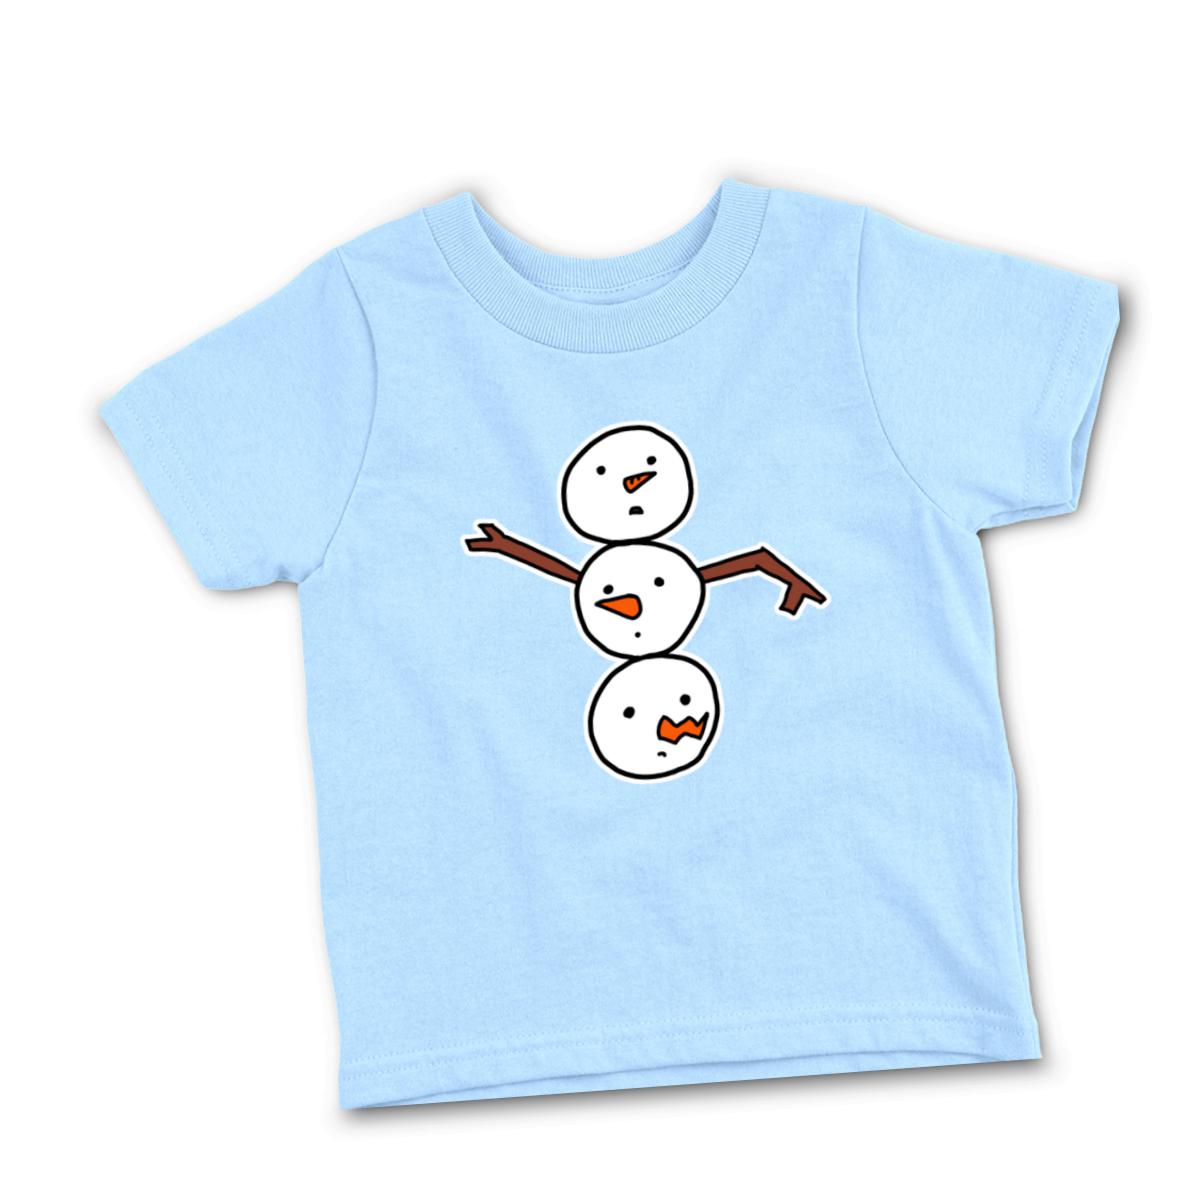 Snowman All Heads Infant Tee 12M light-blue